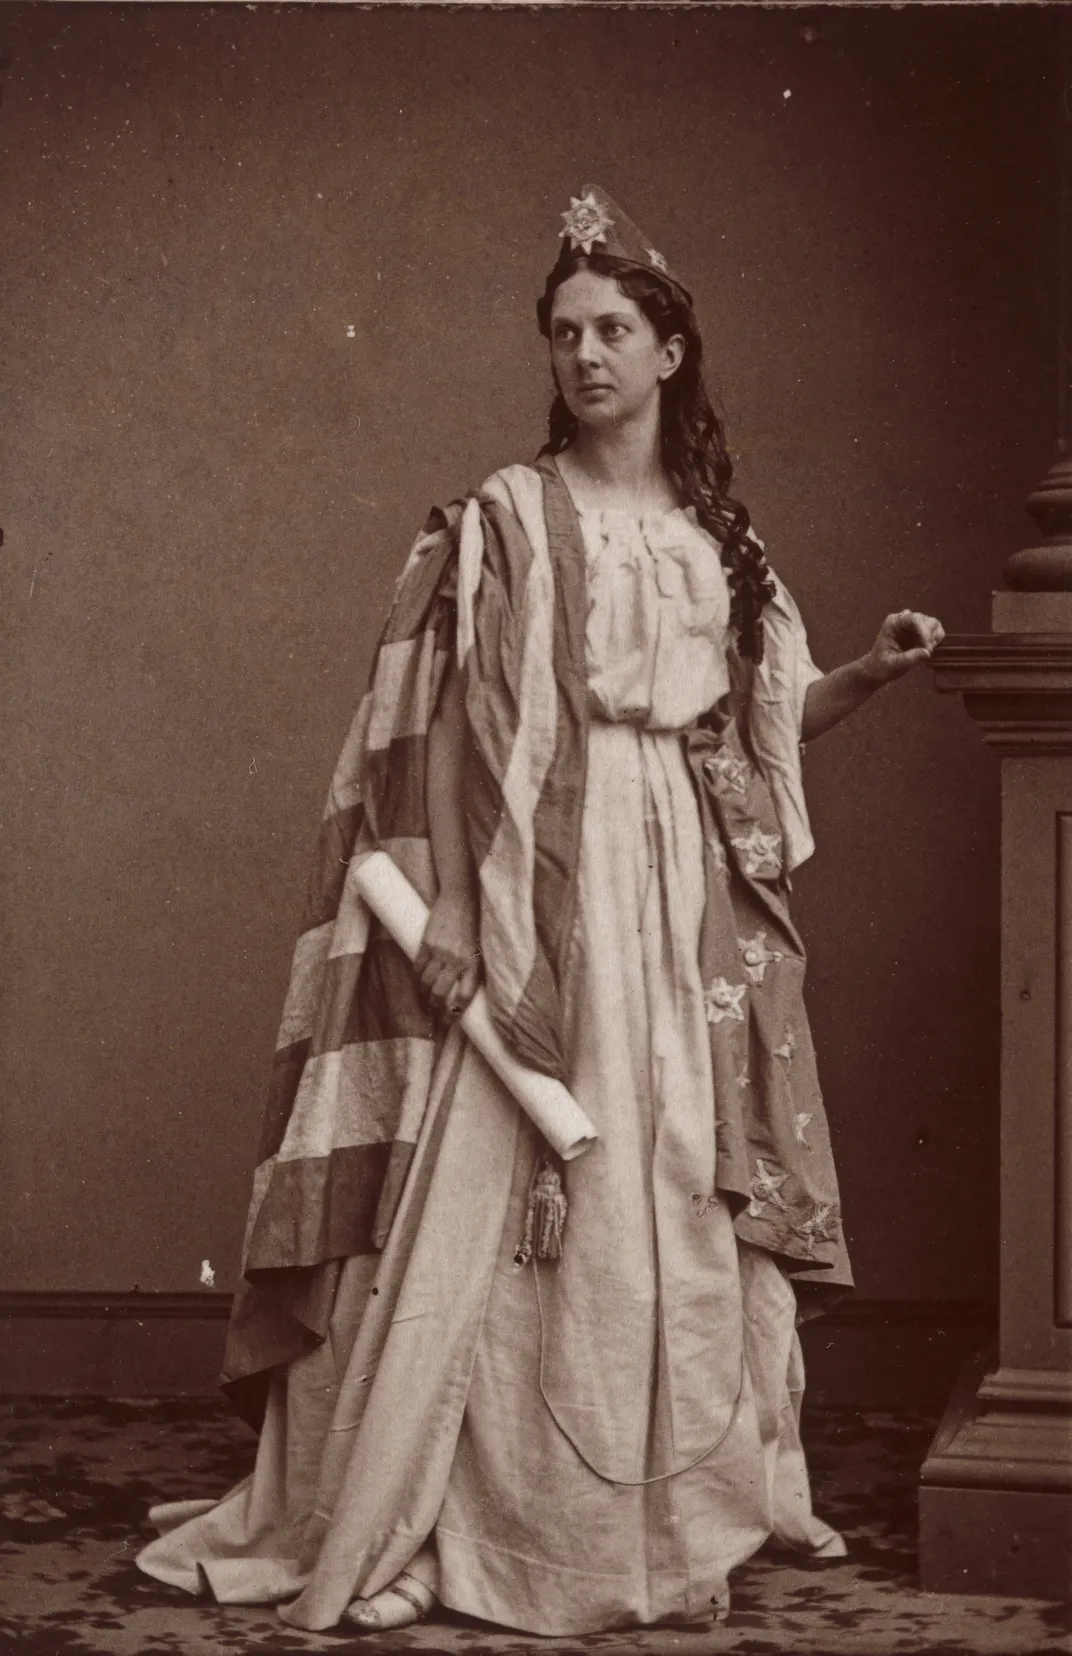 Mrs. J. H. Allen